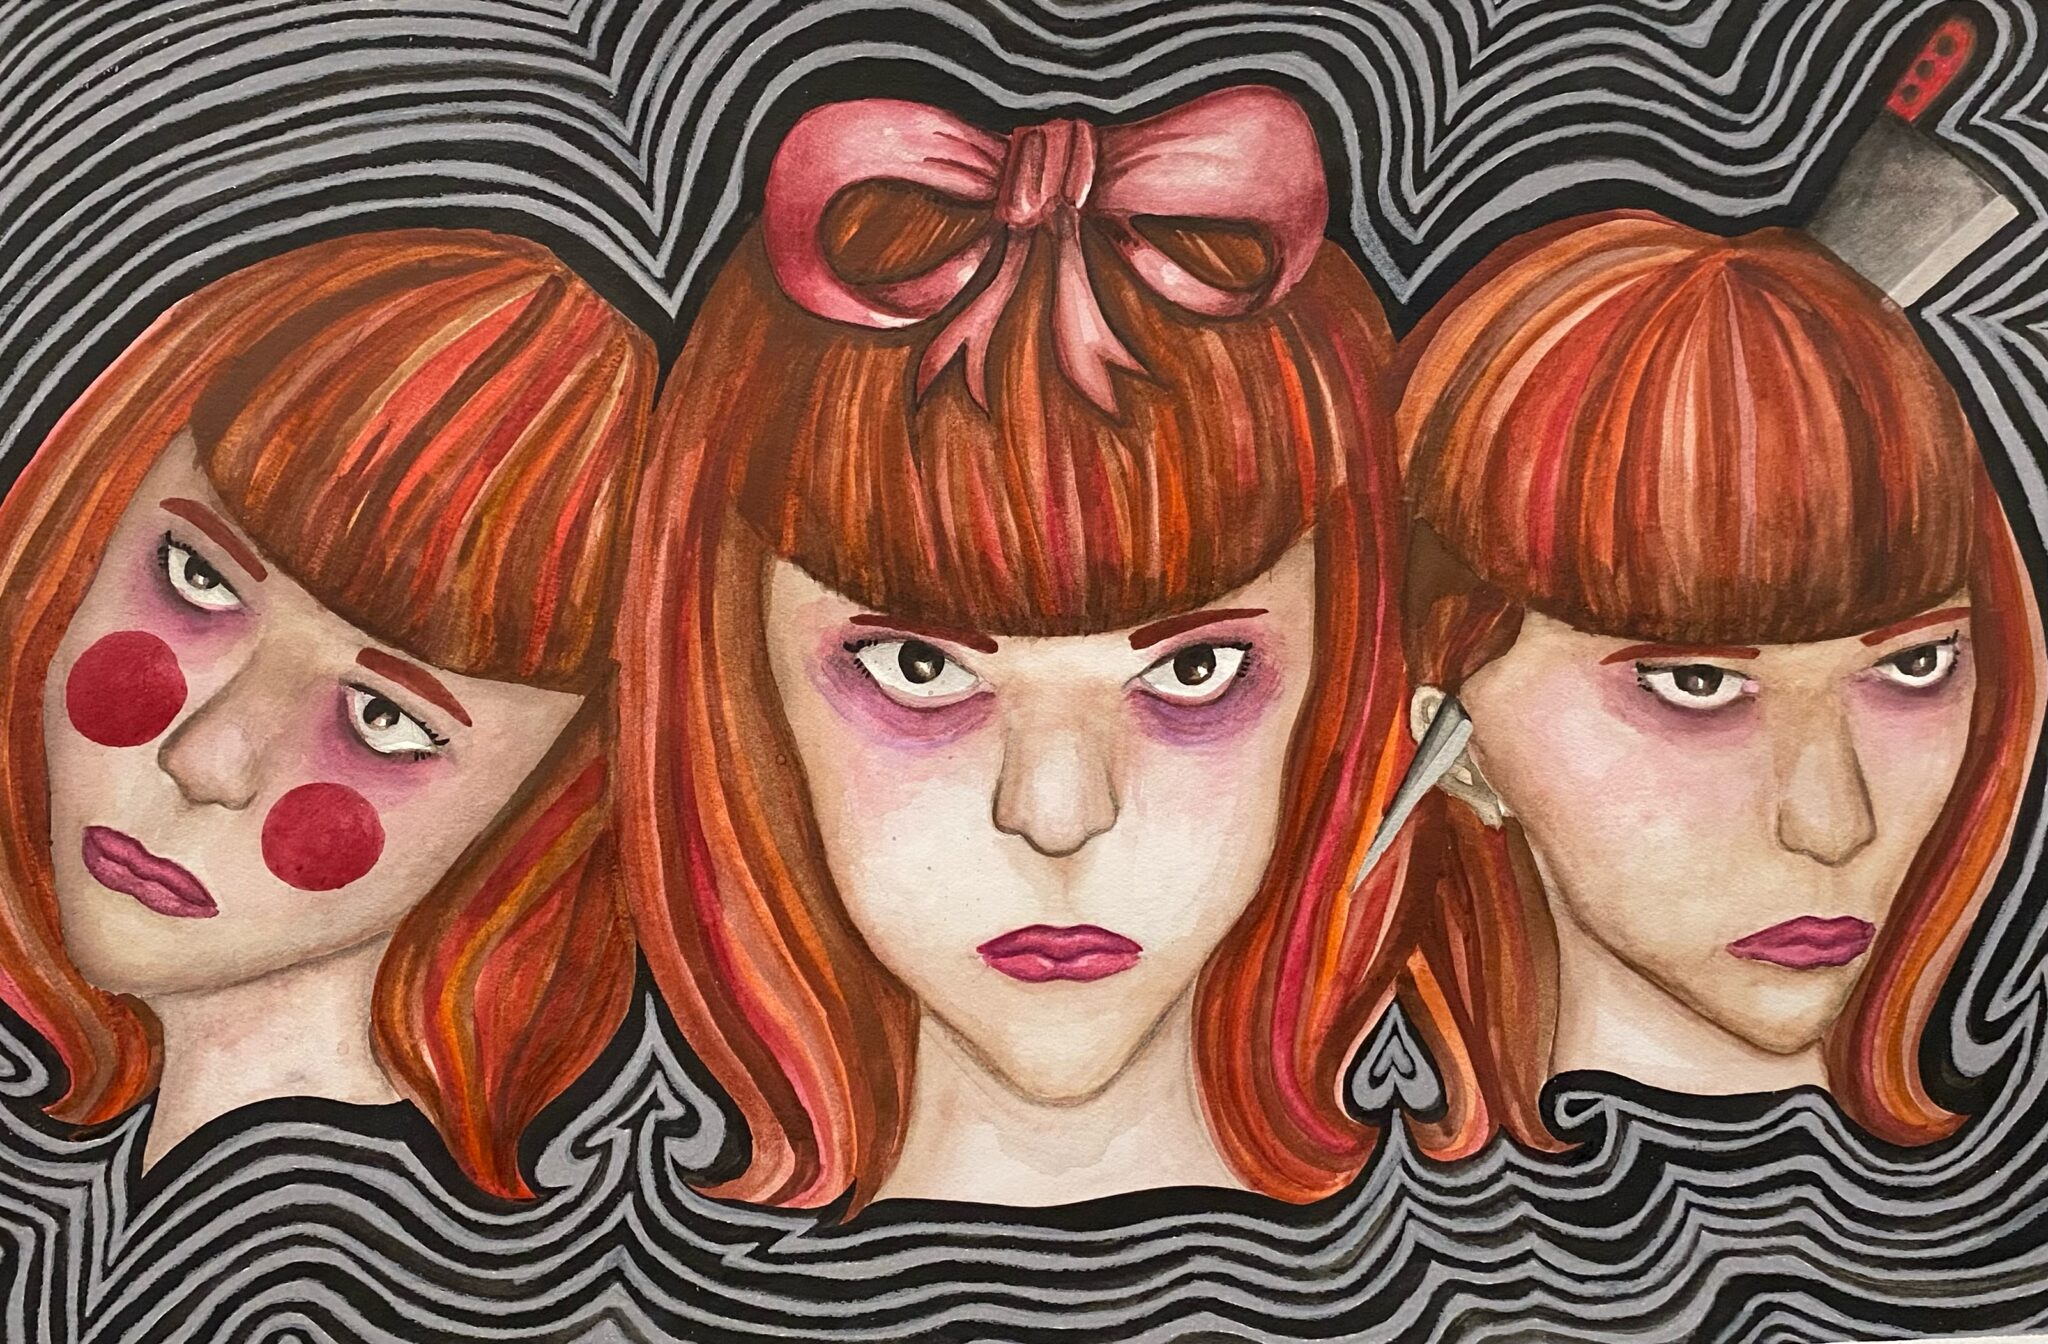 Three doll like woman staring menacingly